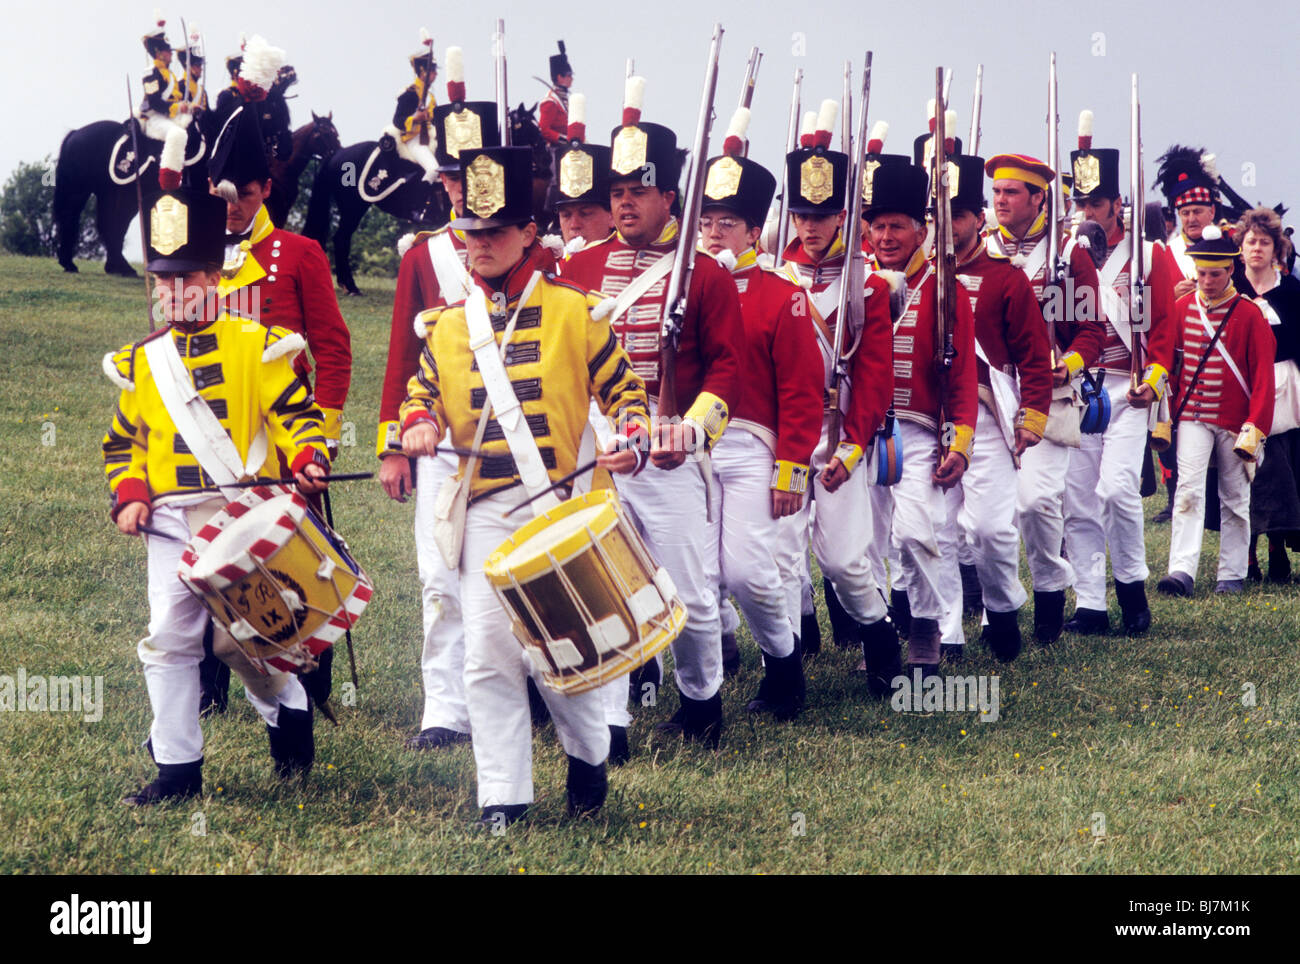 Britische Infanterie Redcoats marschieren in Spalte, Regimenter 1815 Fuß Regiment englische britischer Soldat Soldaten einheitliche Uniformen Stockfoto